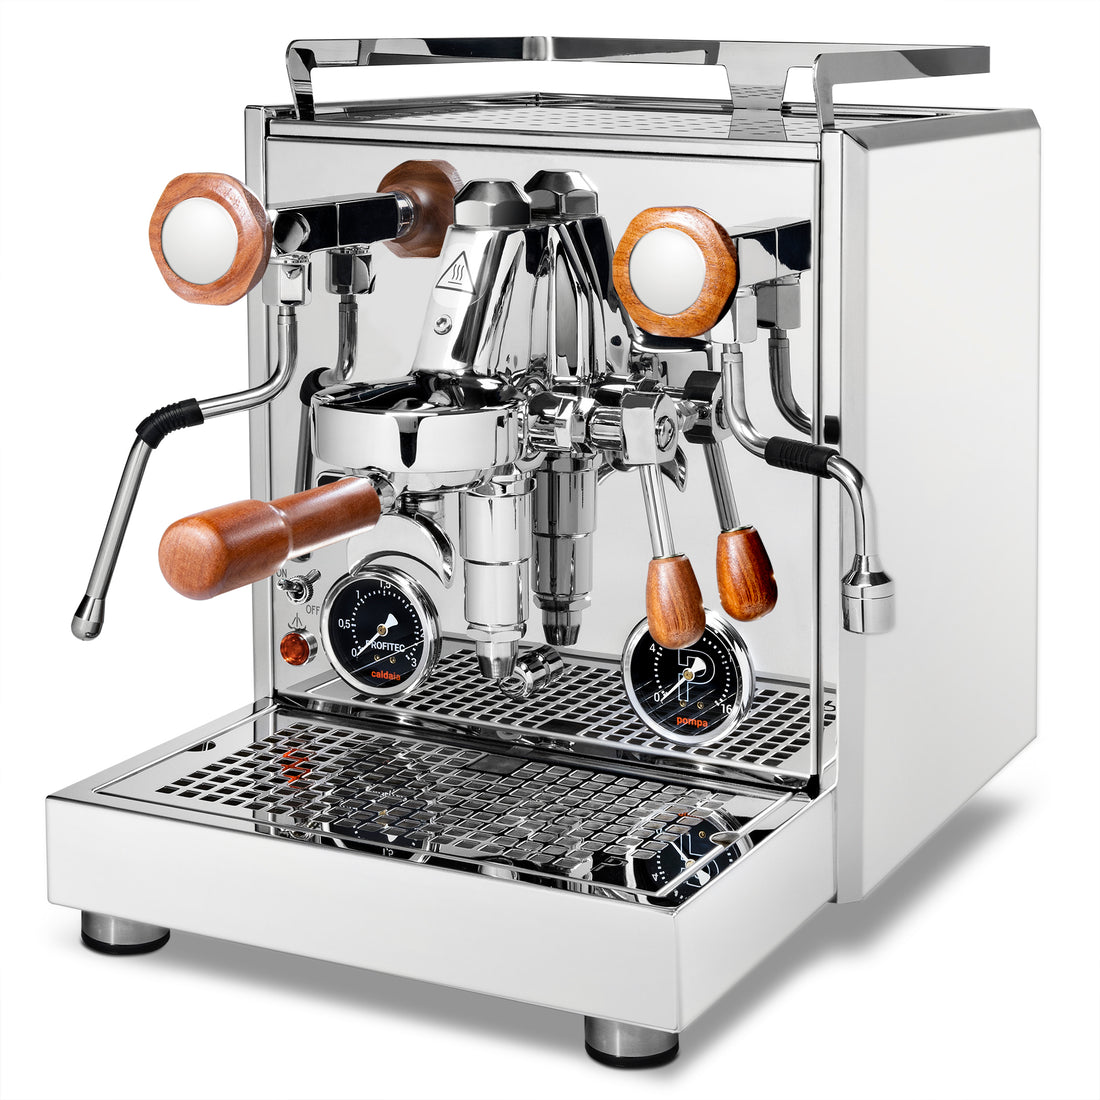 Profitec Pro 700 Dual Boiler Espresso Machine